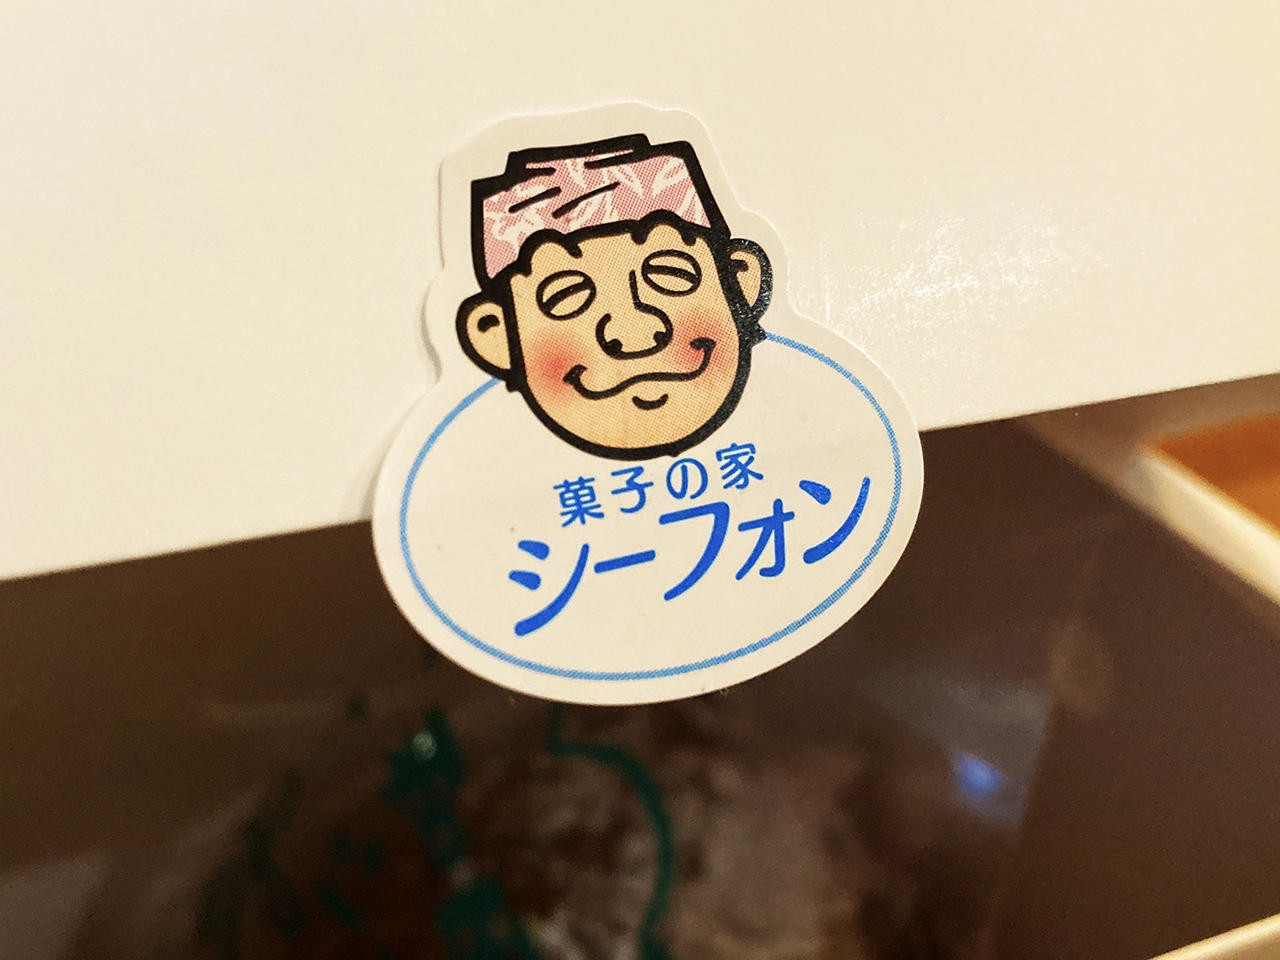 ホイップ好き集合！和田・路地裏の名店『菓子の家シーフォン』